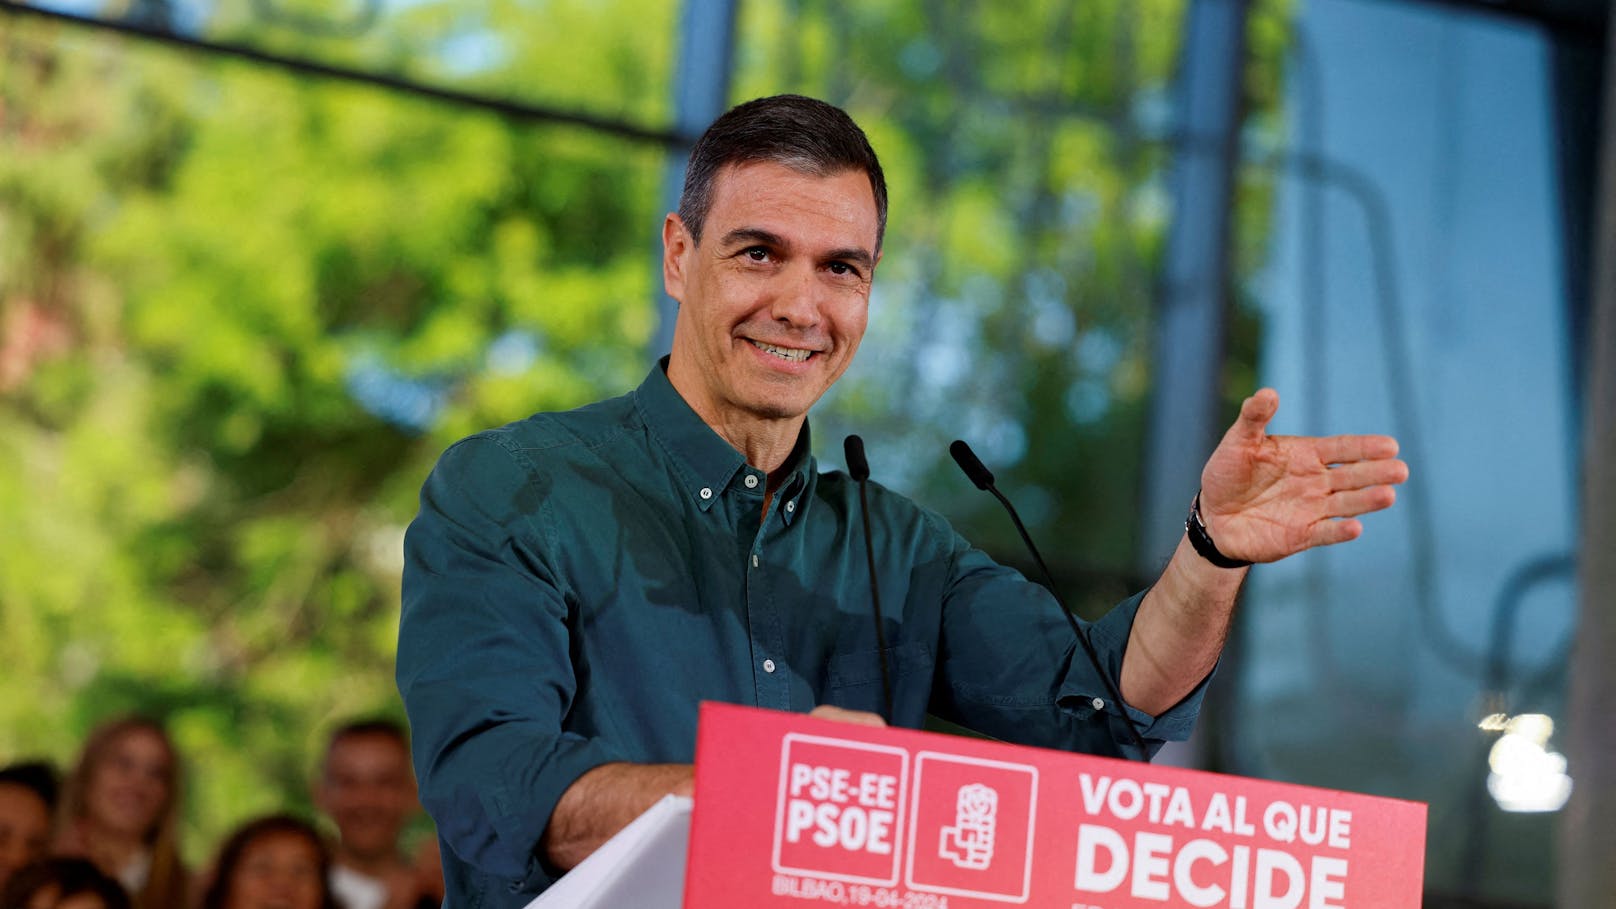 Spanischer Premier nimmt sich unerwartete Auszeit